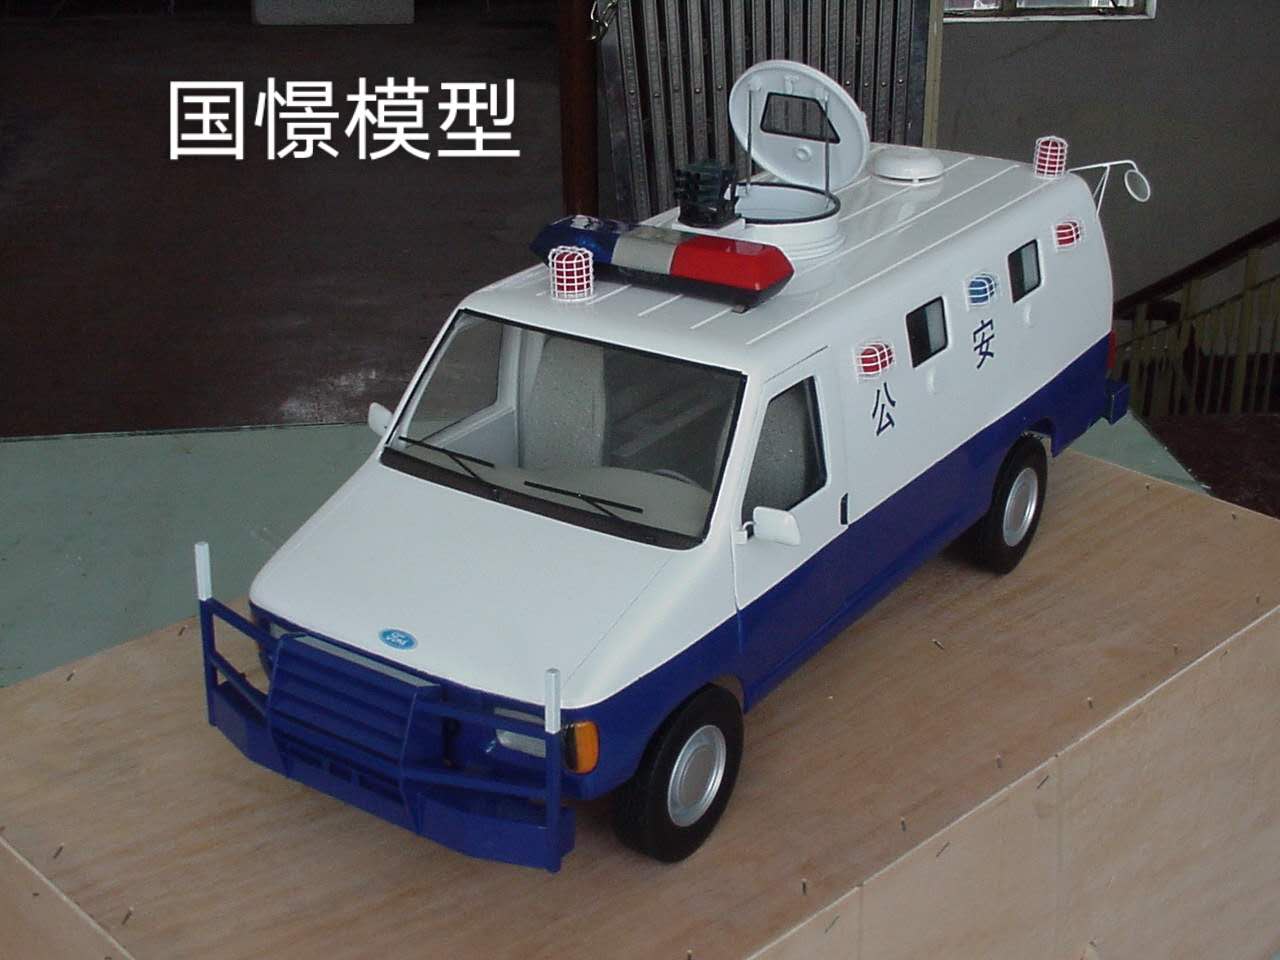 衡山县车辆模型